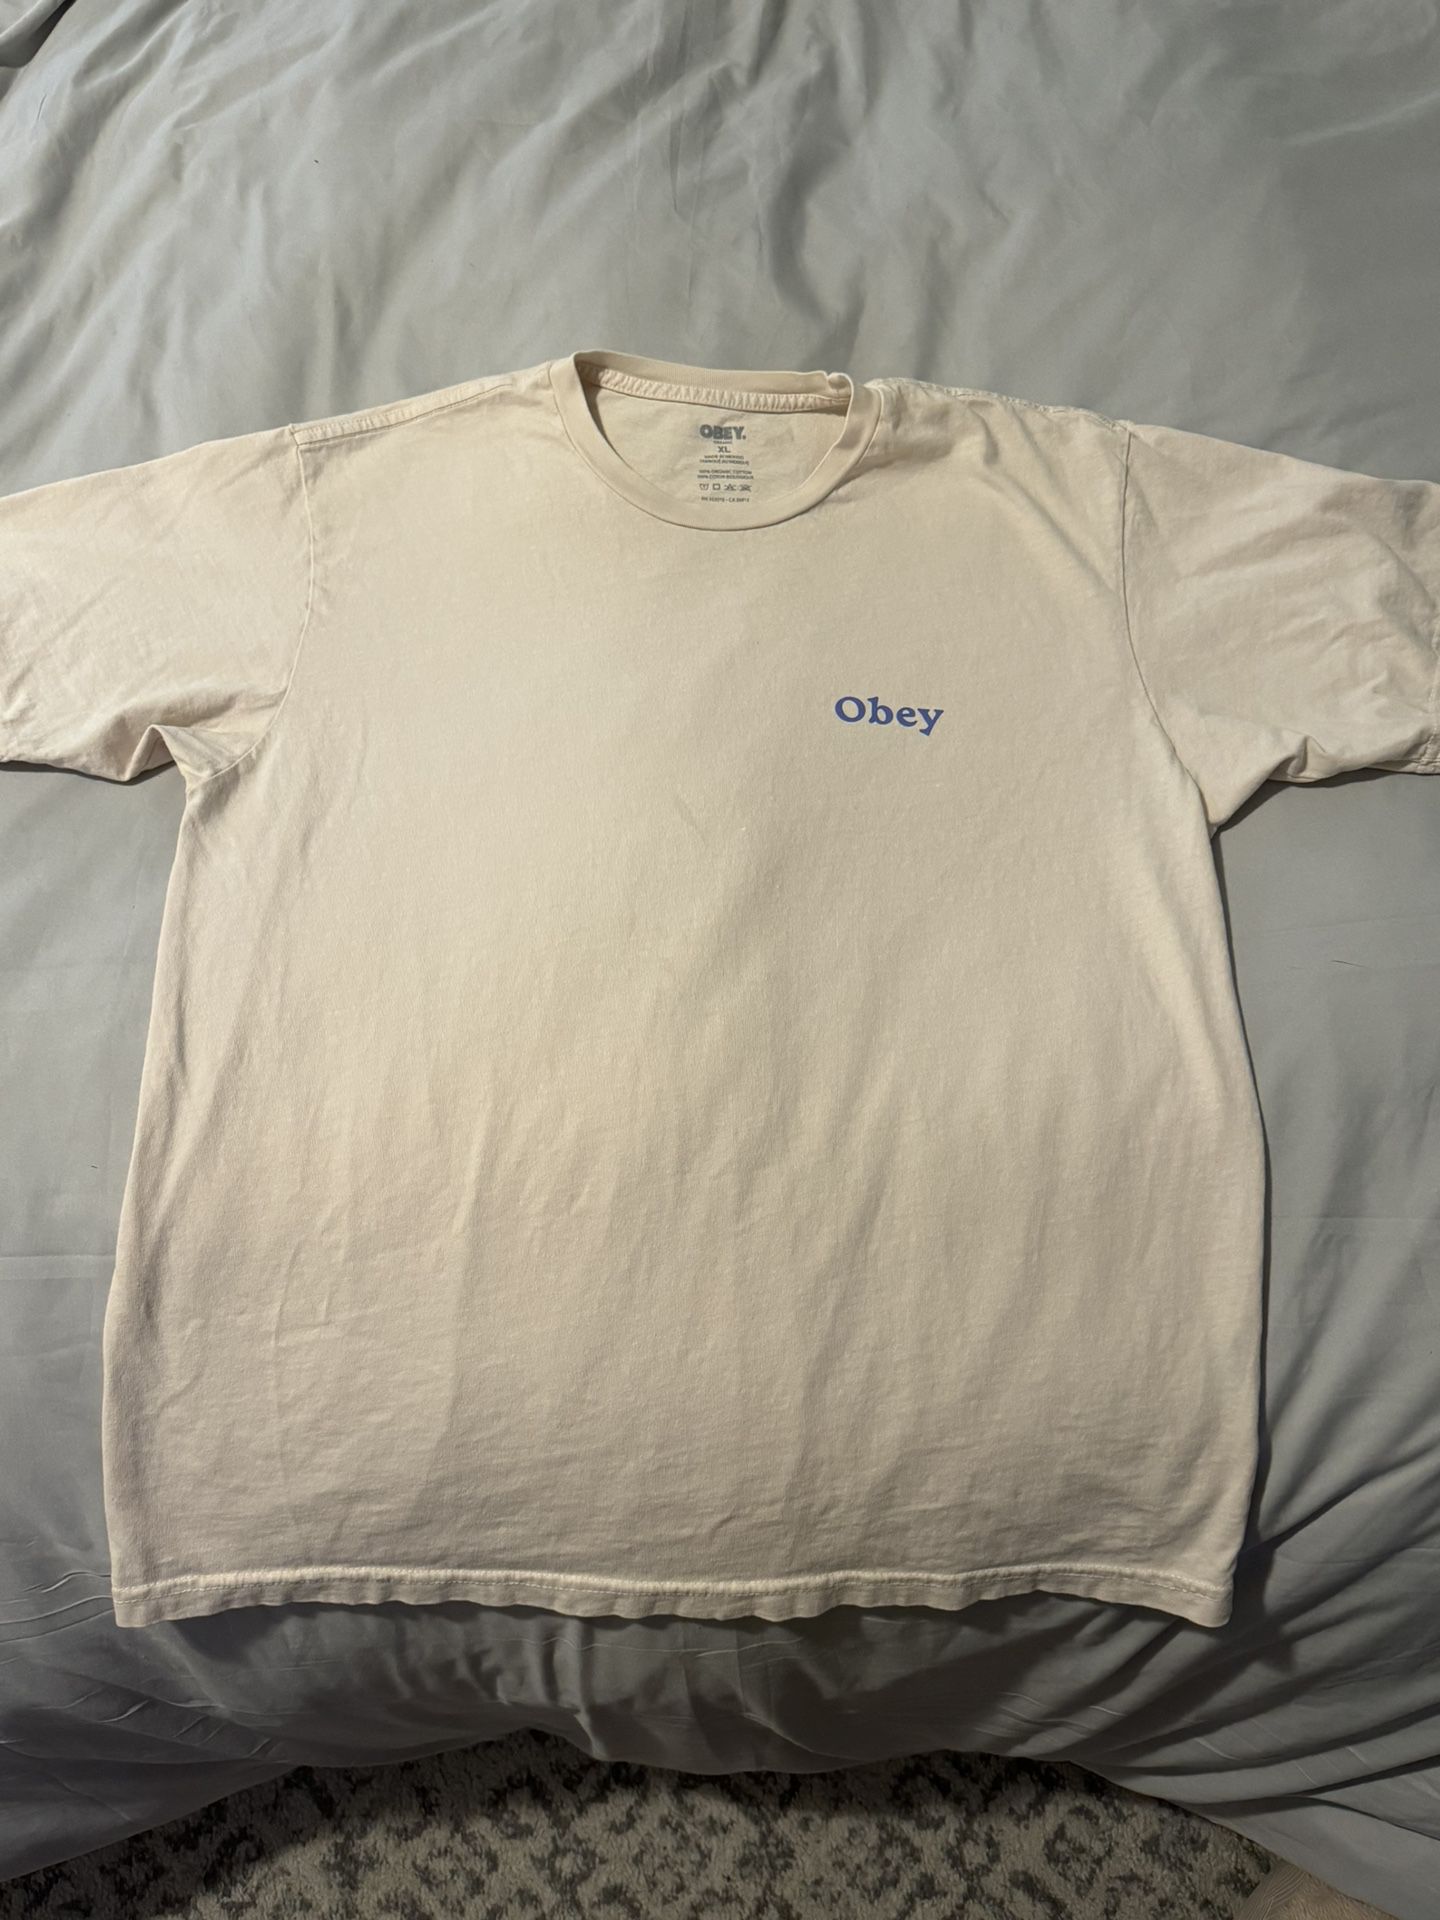 Obey T-Shirt | Size XL